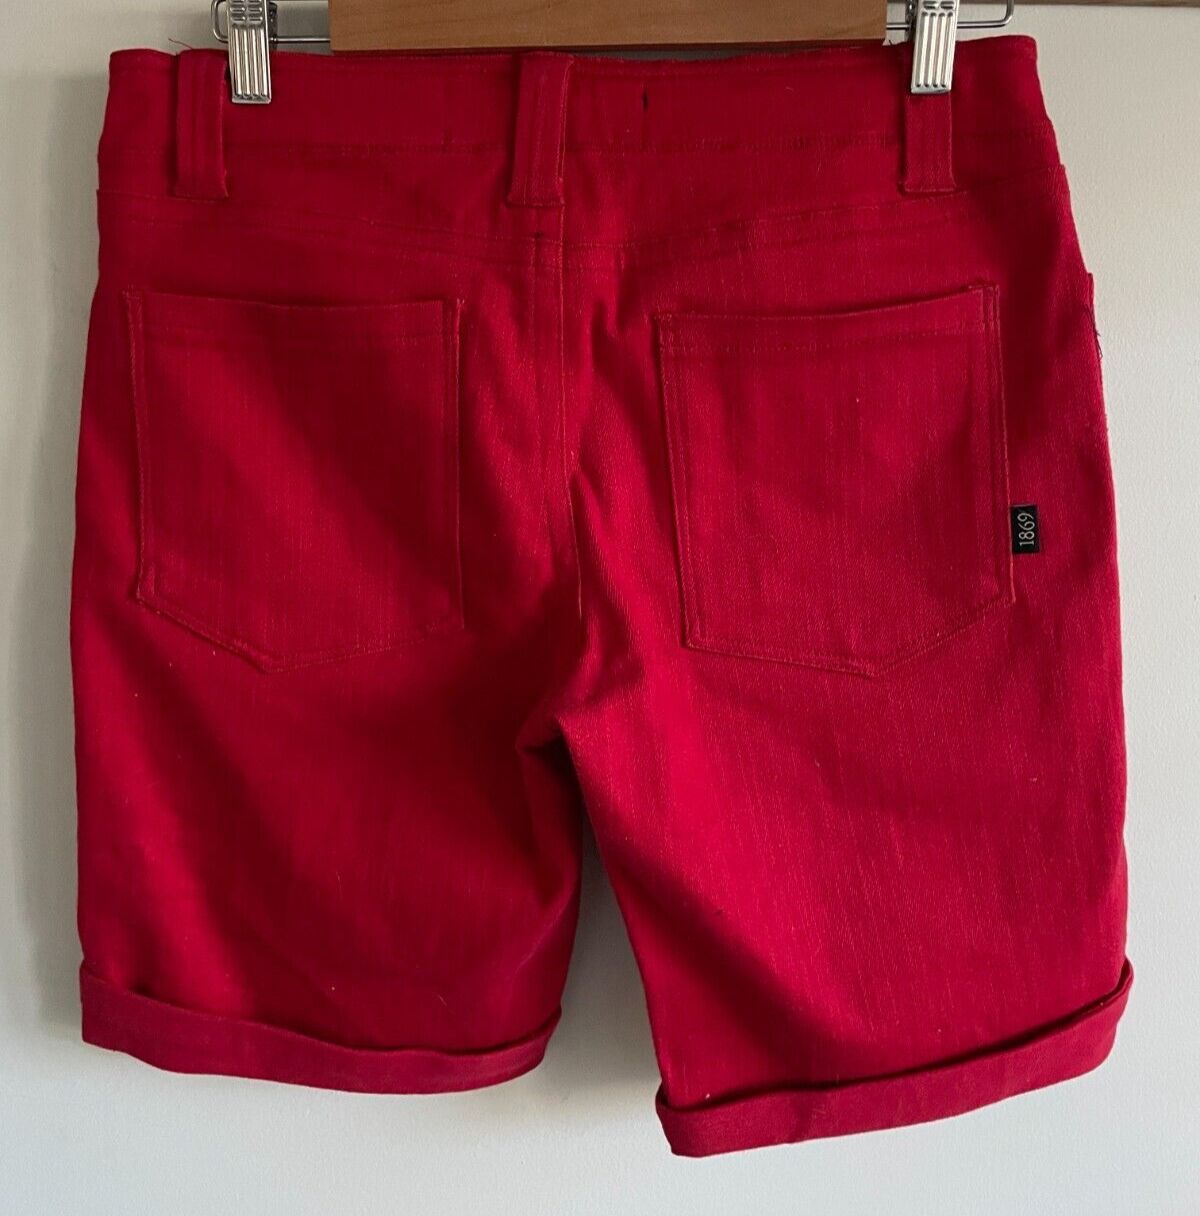 Black Friday by DANGERFIELD Womens Red Denim Shorts Size 10 Cuffed Stretch | eBay AU